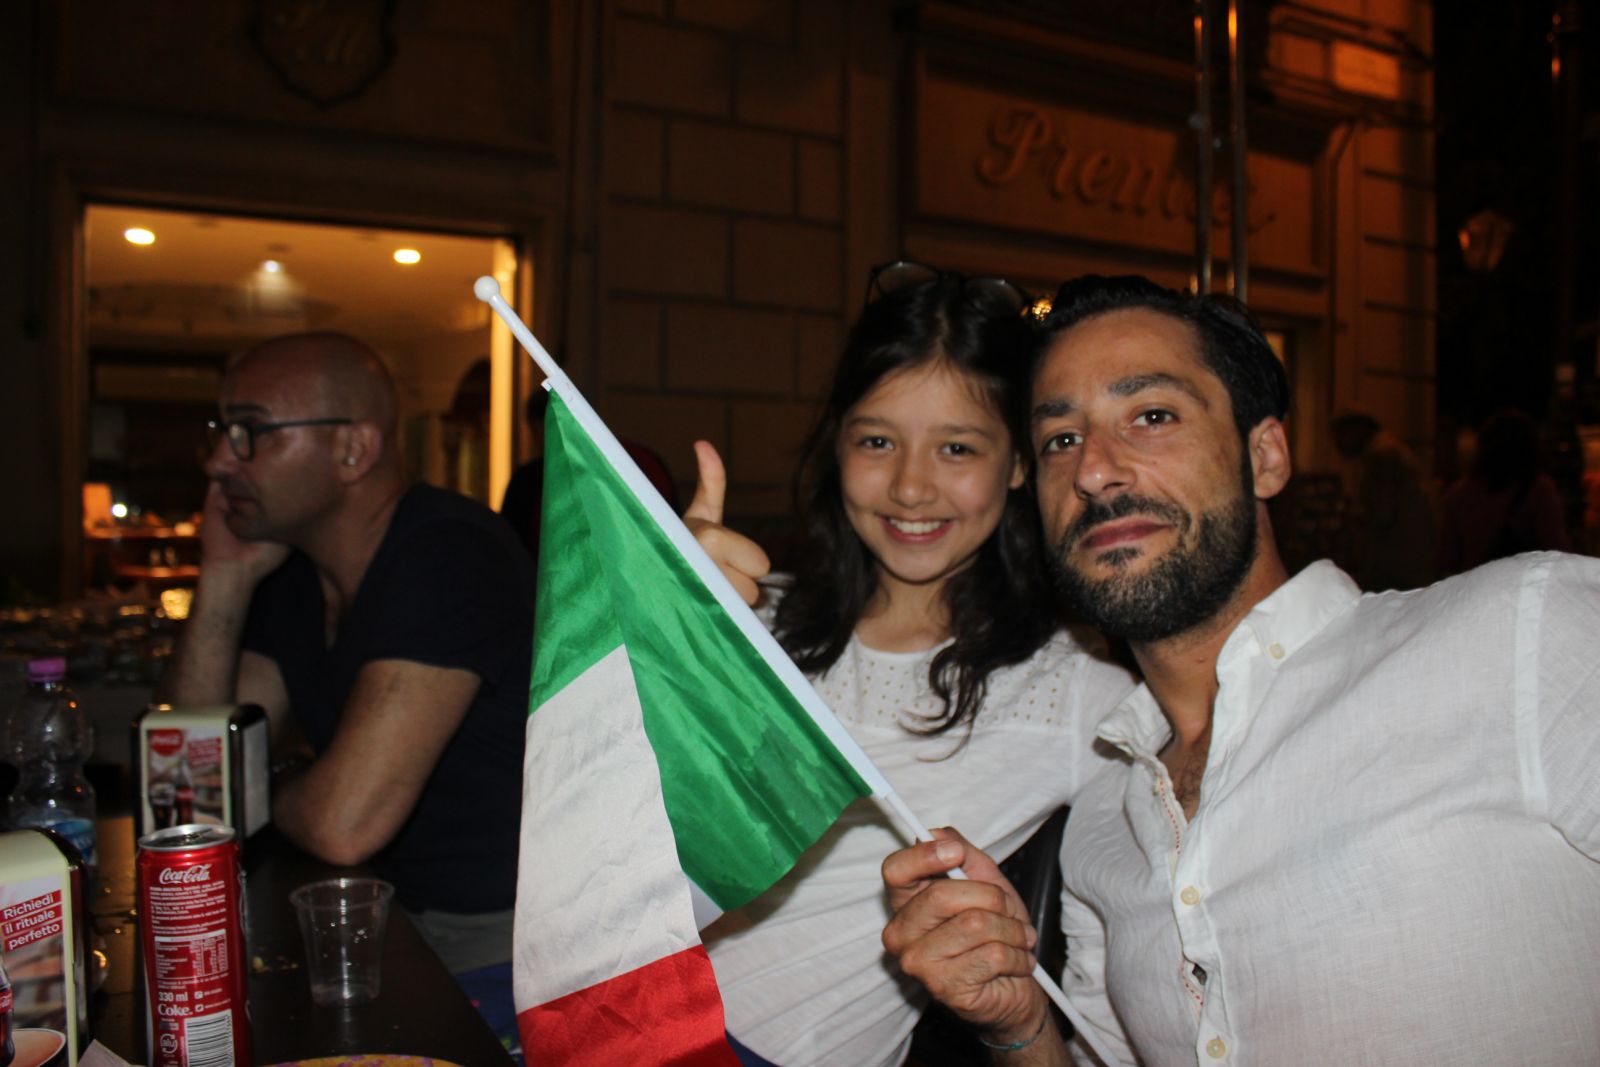 О том, как выйти замуж за итальянца и жить в курортном городе Италии